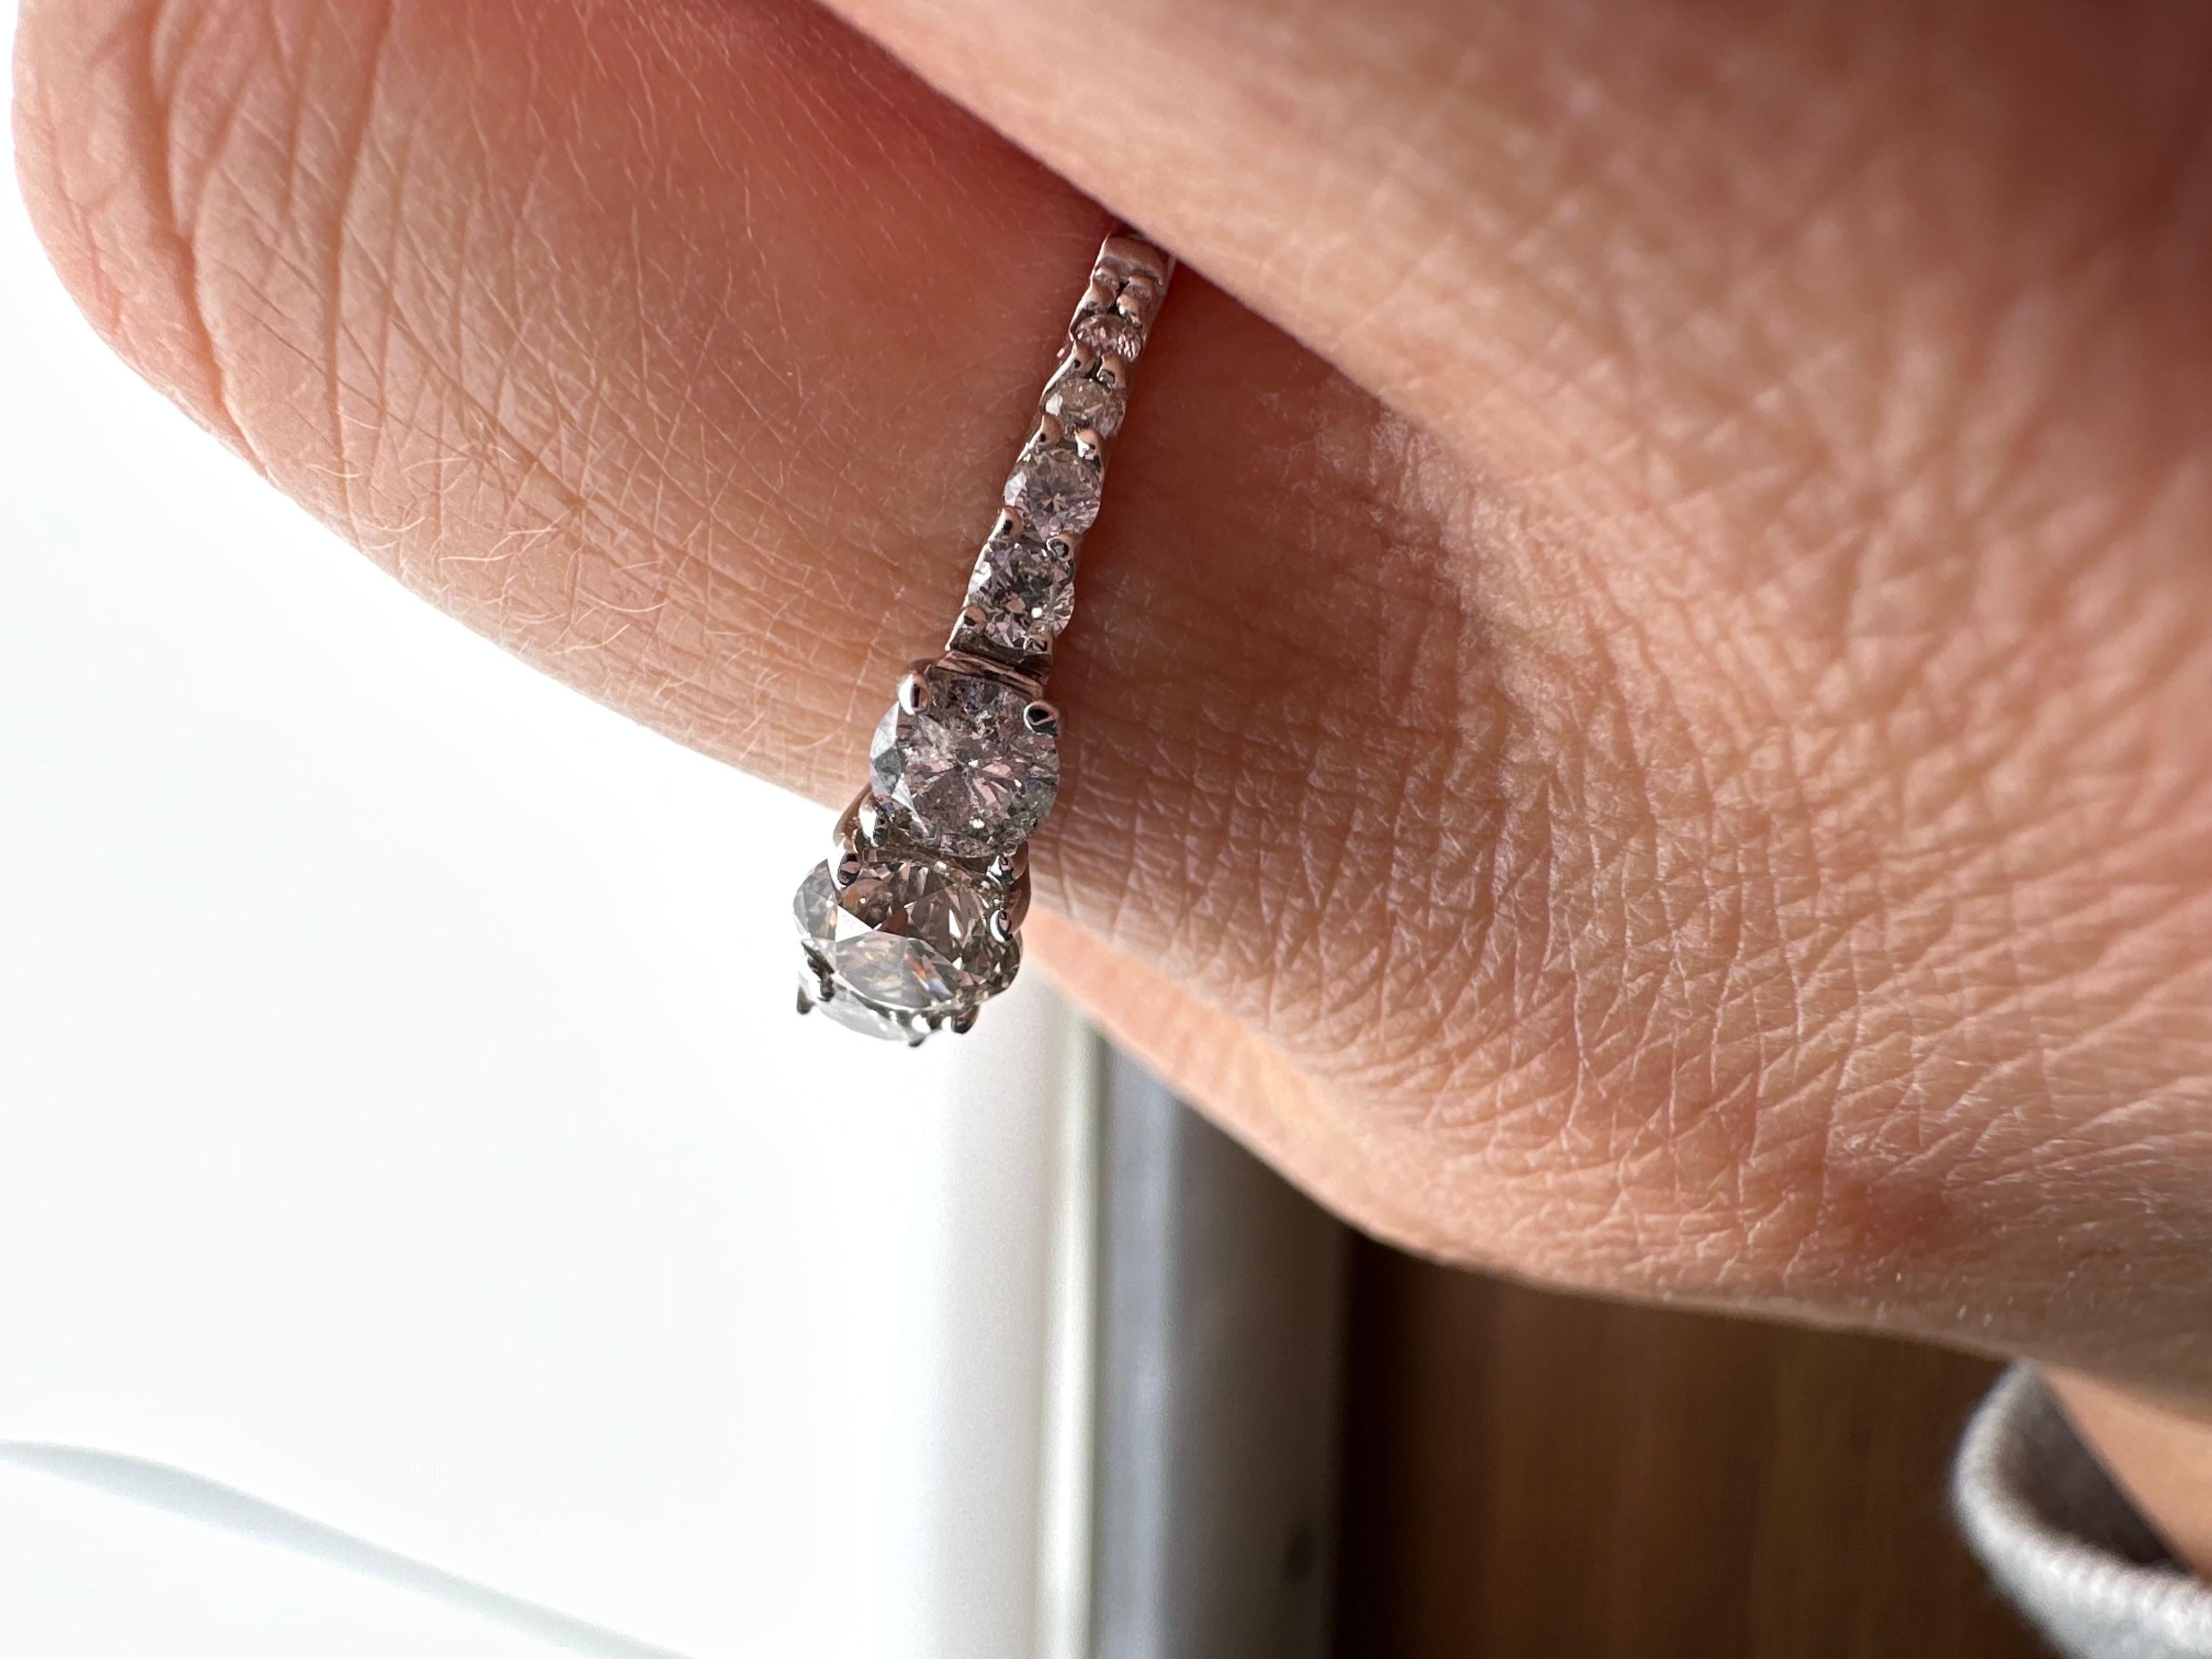 Atemberaubender Verlobungsring mit drei Mittelsteinen, der Ring ist so gefertigt, als ob die Diamanten schweben würden! Dieser Ring funkelt und glänzt, das Metall ist 14KT Weißgold.

Metall Typ: 14KT


Natürliche(r) Diamant(en): 
Farbe: Fancy